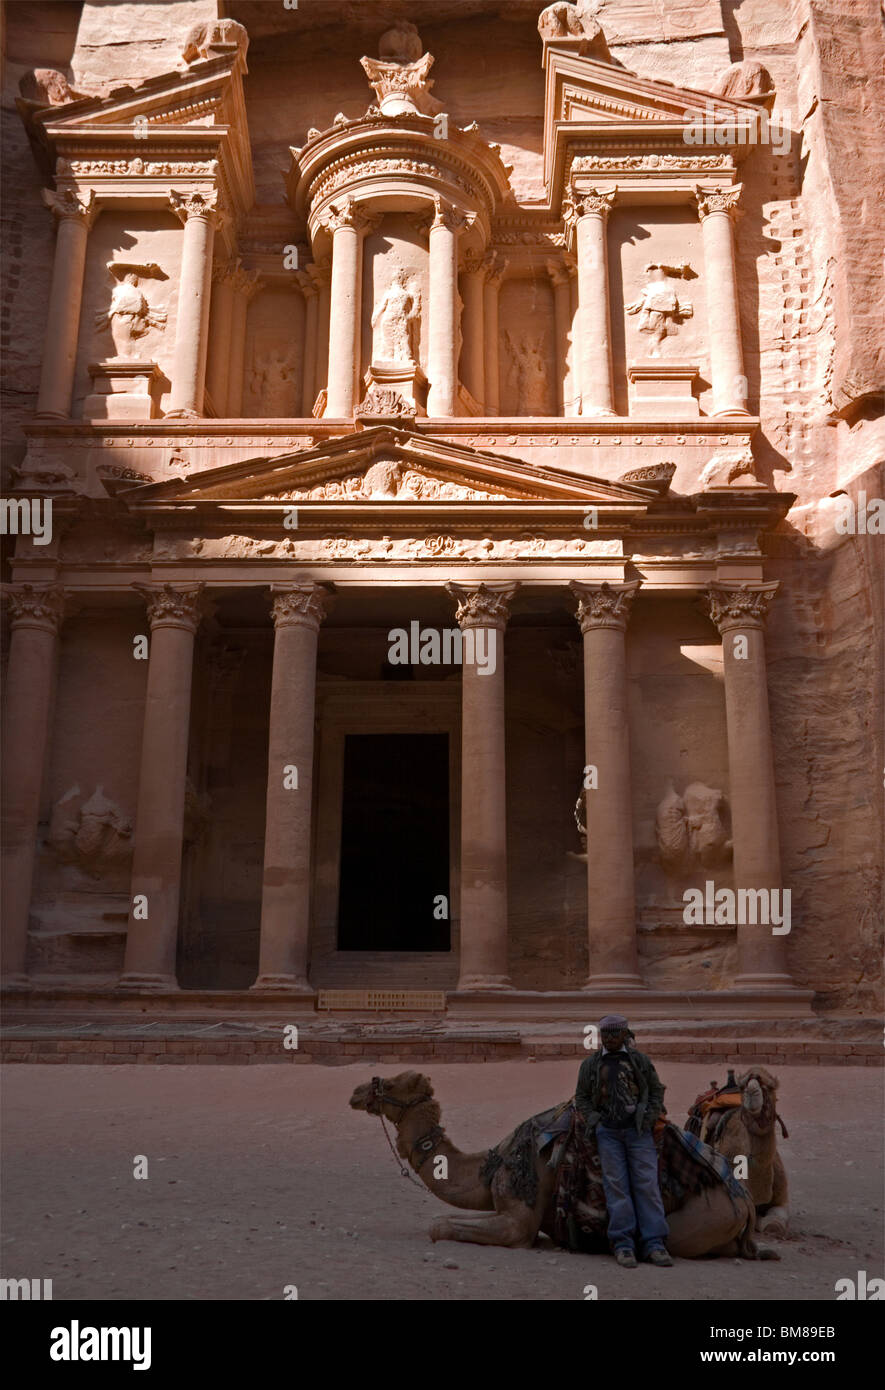 Façade du trésor, avec un chameau à l'avant, dans l'ancienne ville rose de Petra en Jordanie Banque D'Images